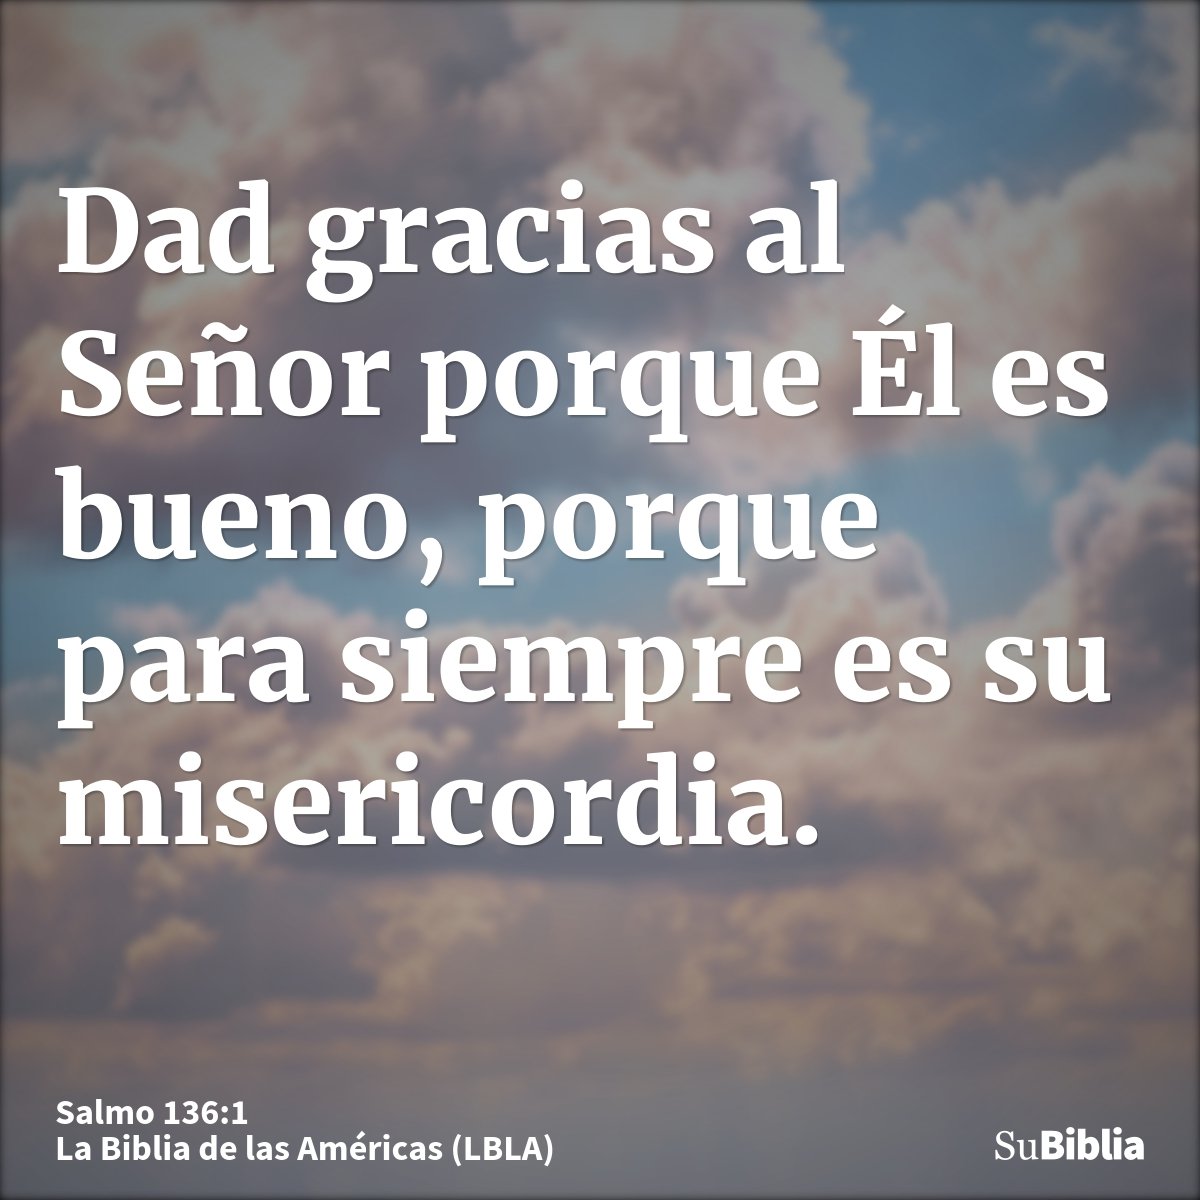 Dad gracias al Señor porque Él es bueno, porque para siempre es su misericordia.